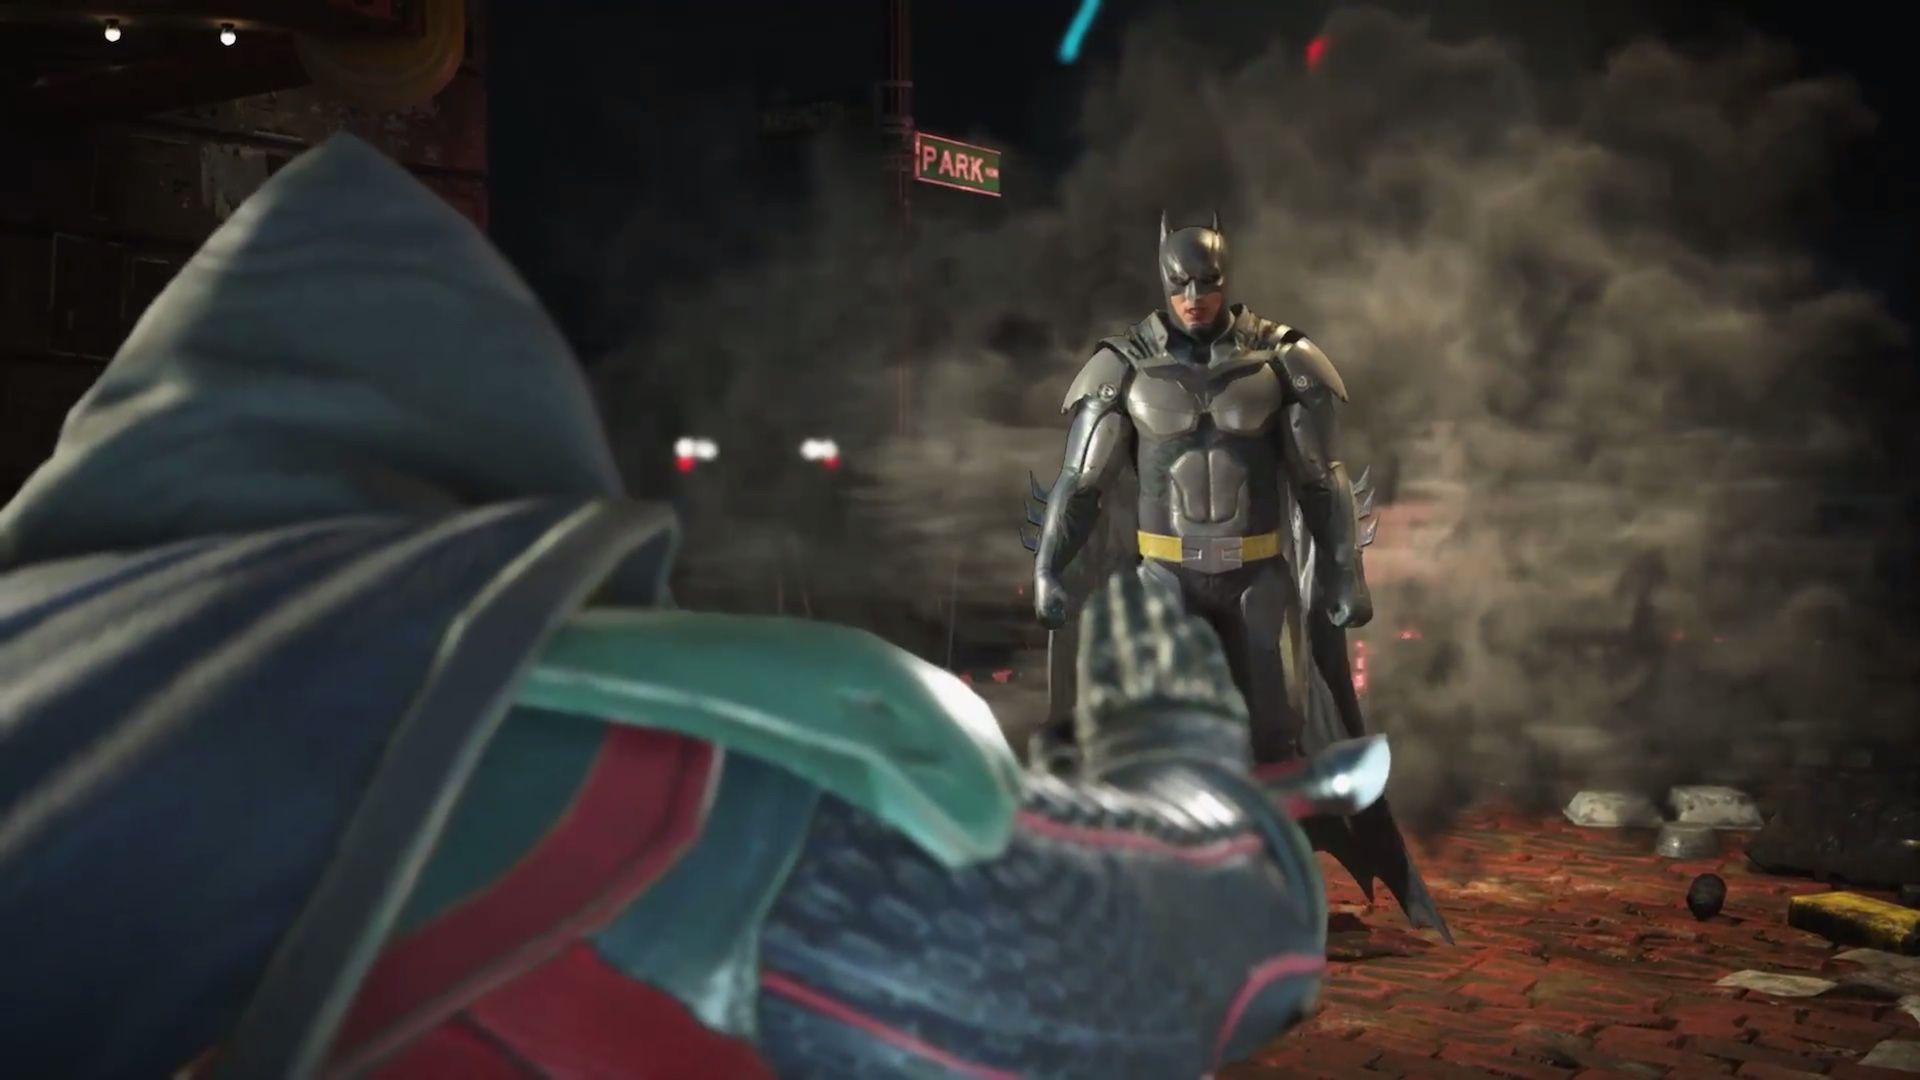 It's Batman vs. Robin in new 'Injustice 2' gameplay trailer